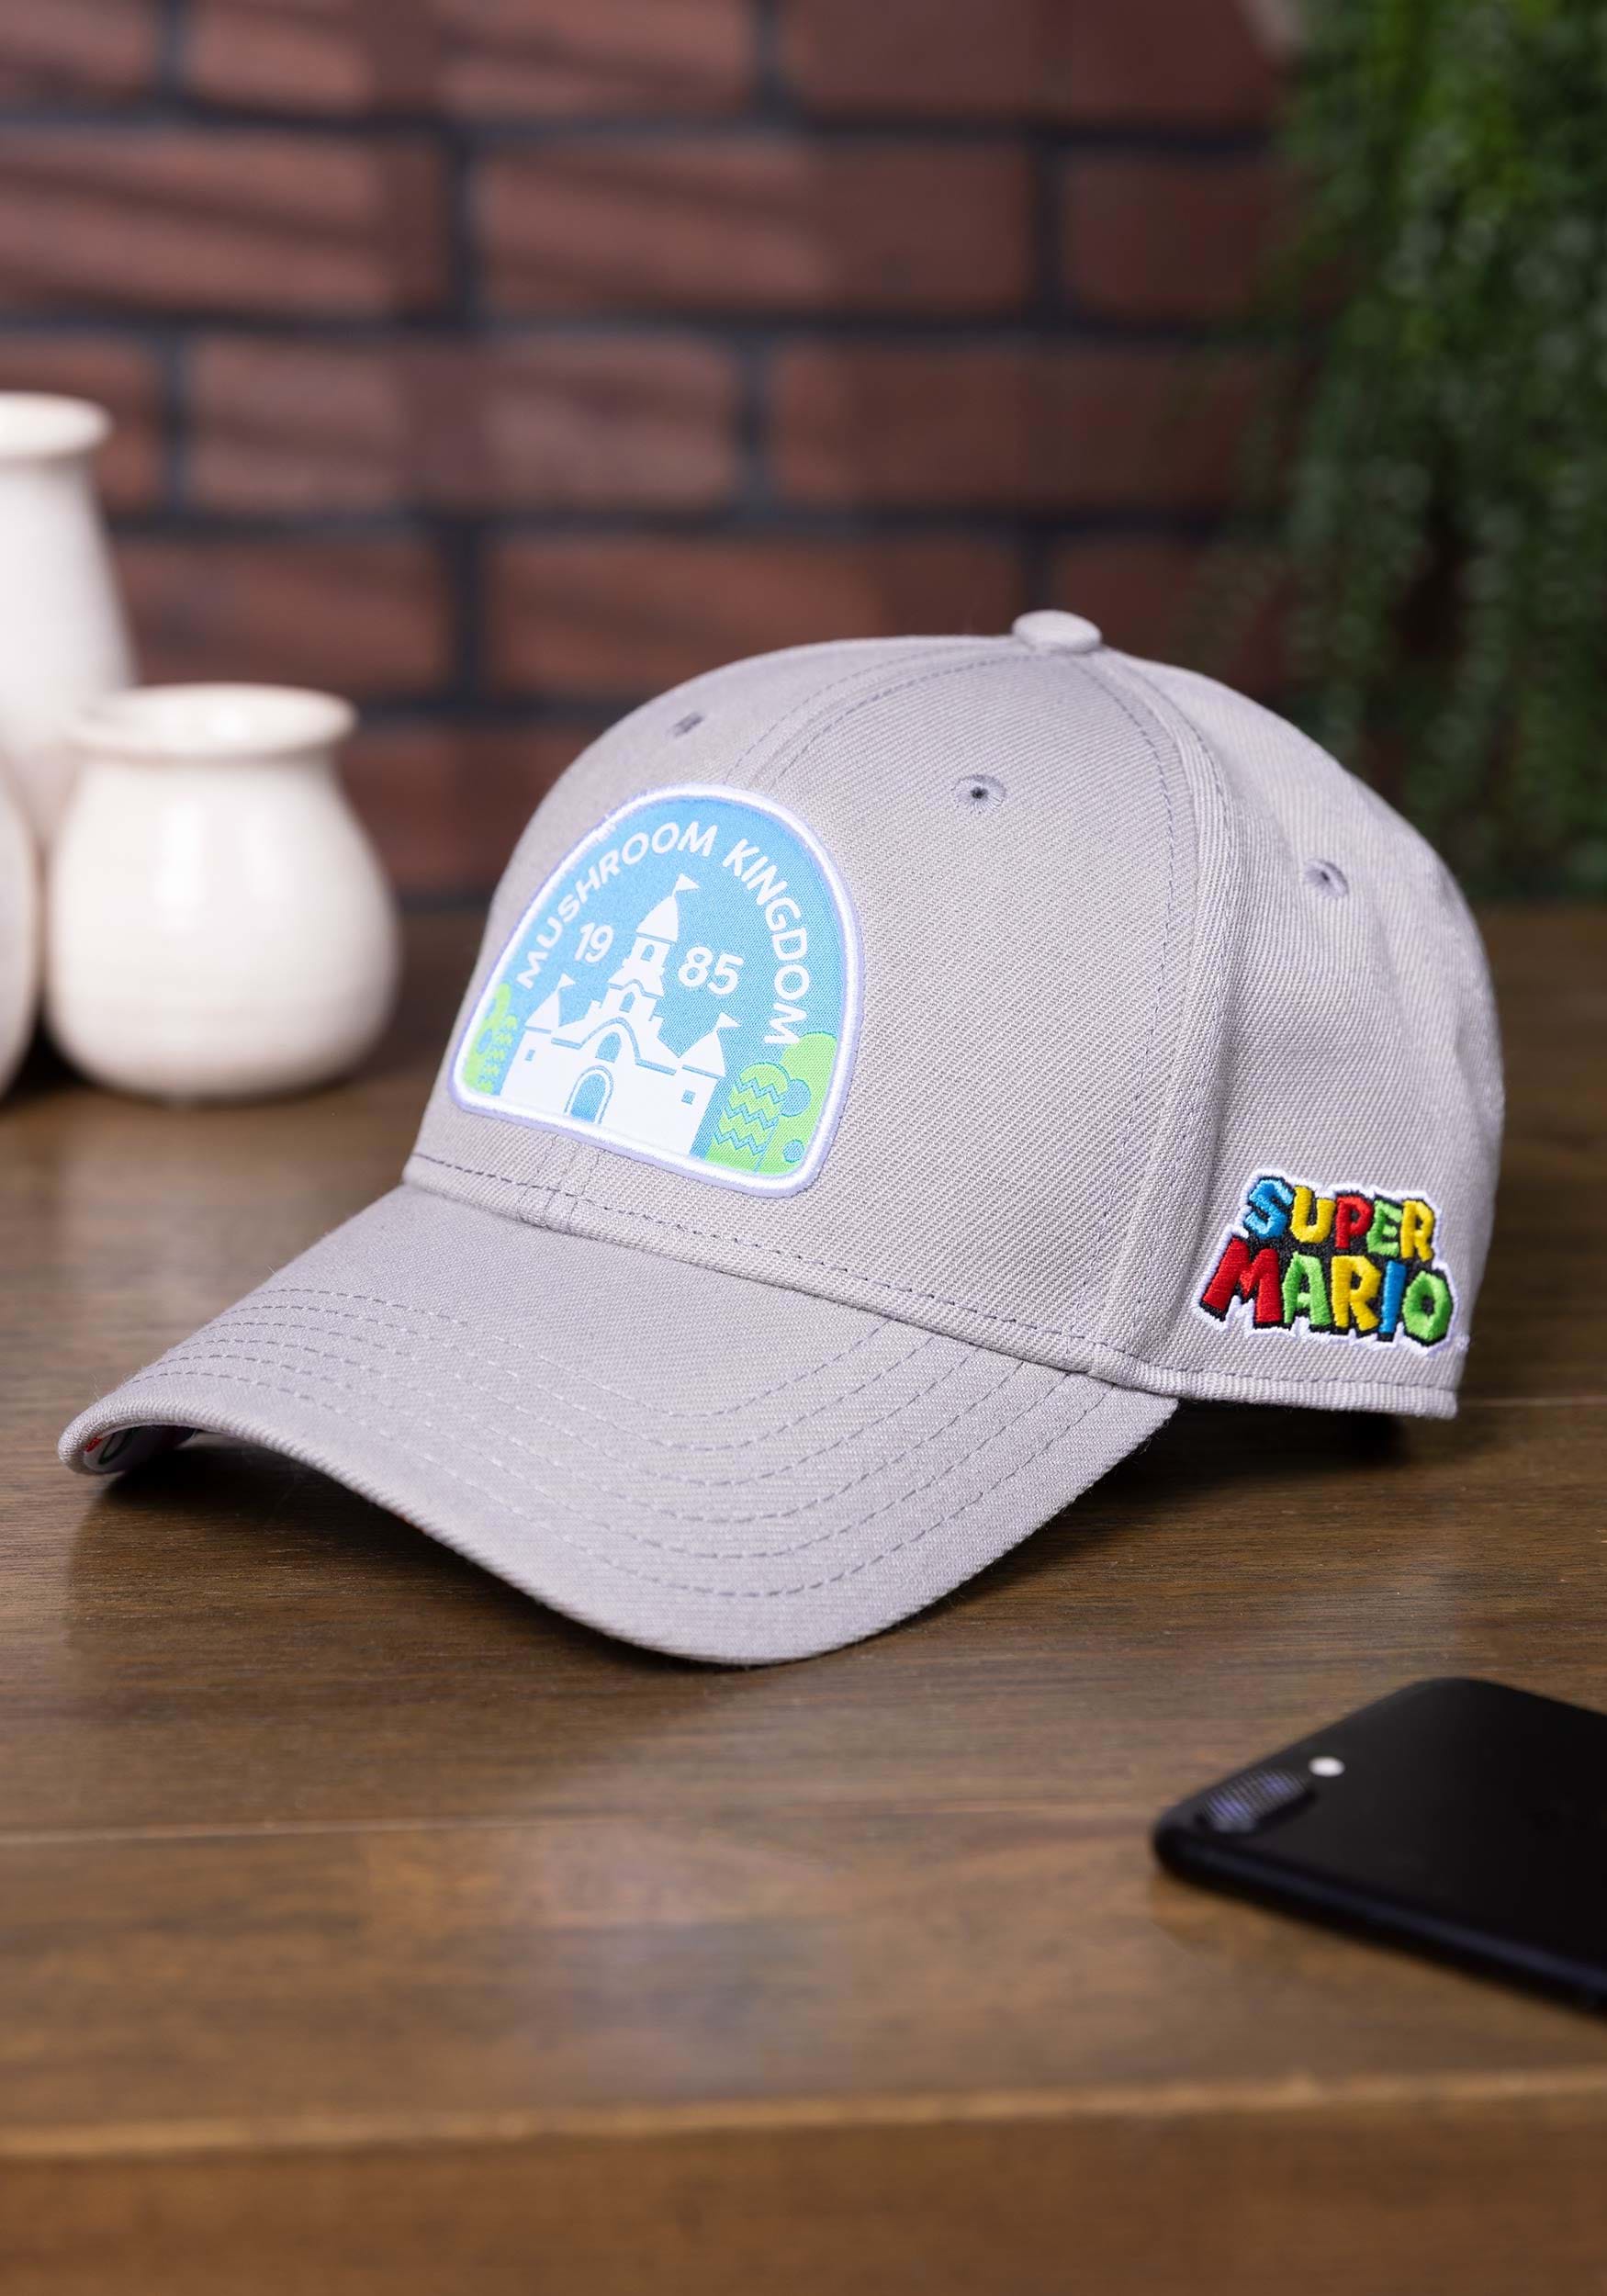 Fremskynde Woods overholdelse Super Mario Mushroom Kingdom Hat